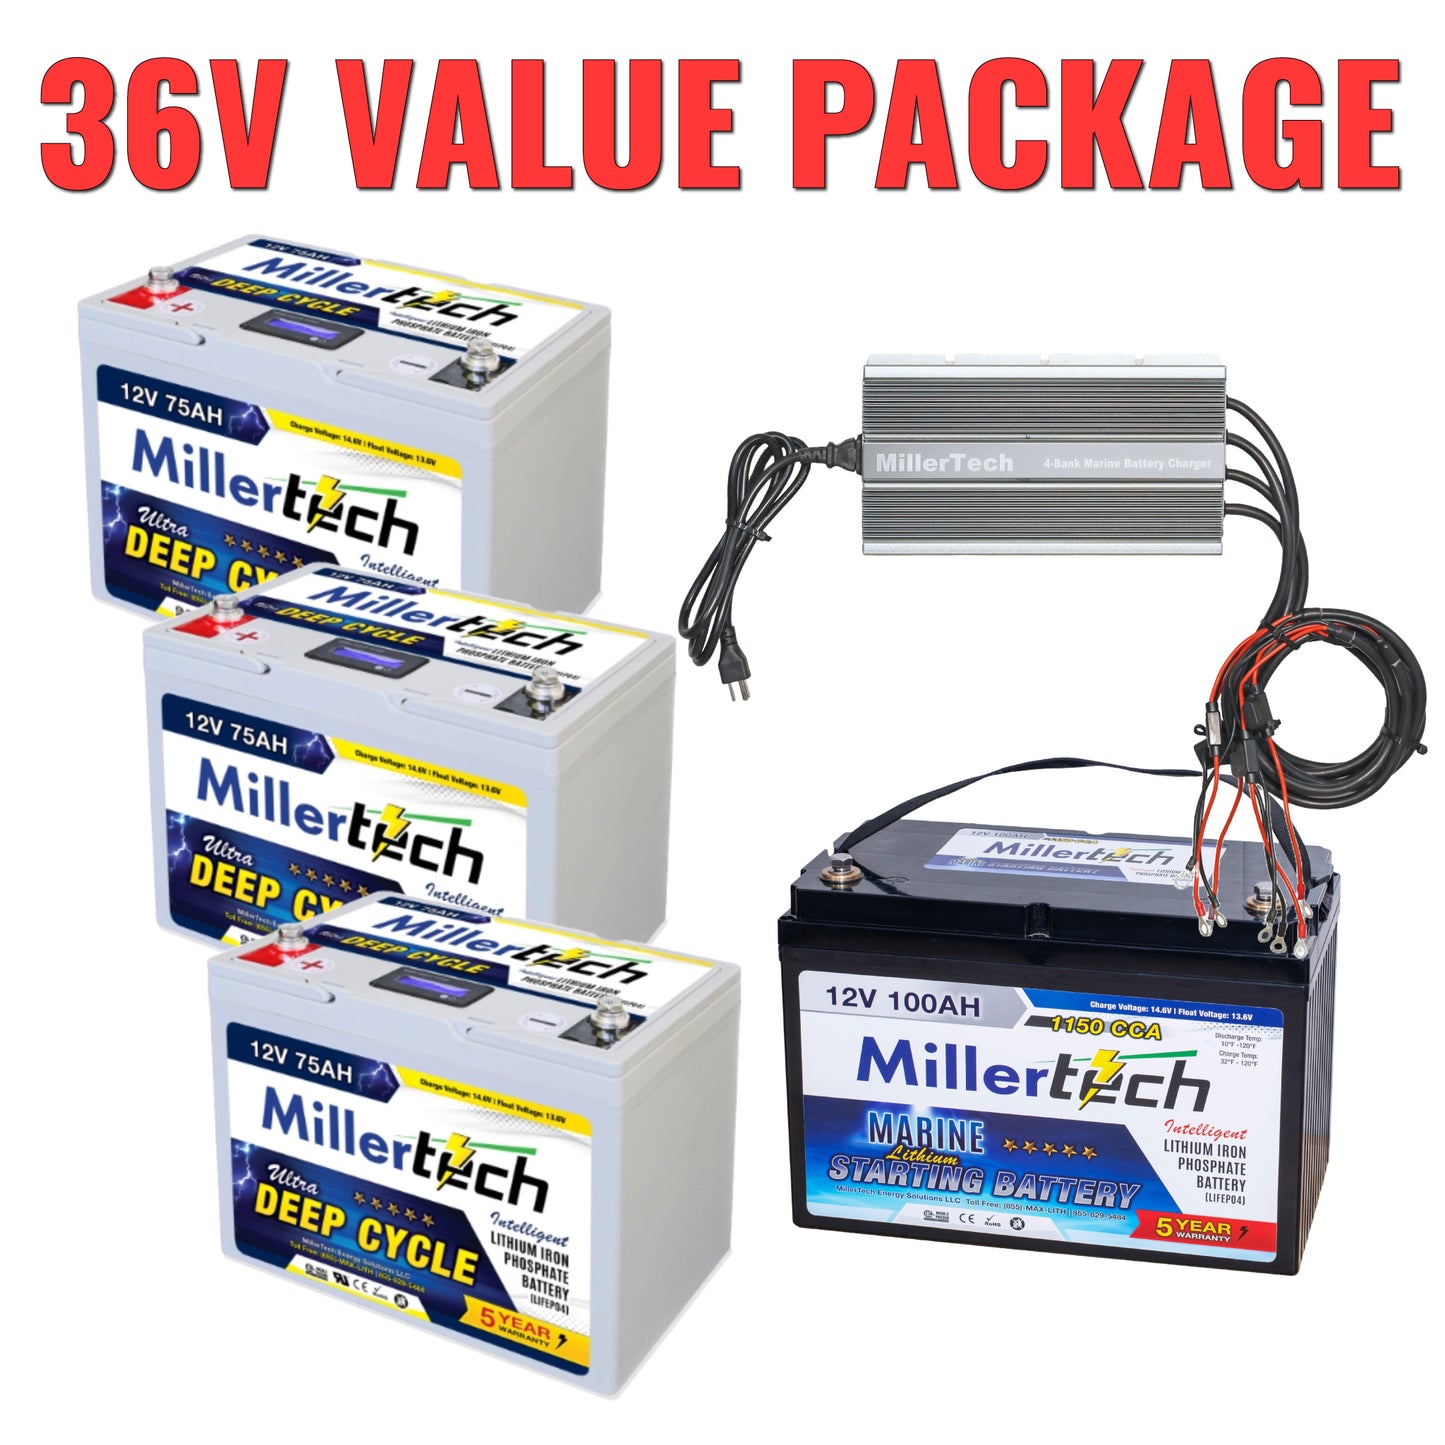 36V Value Package